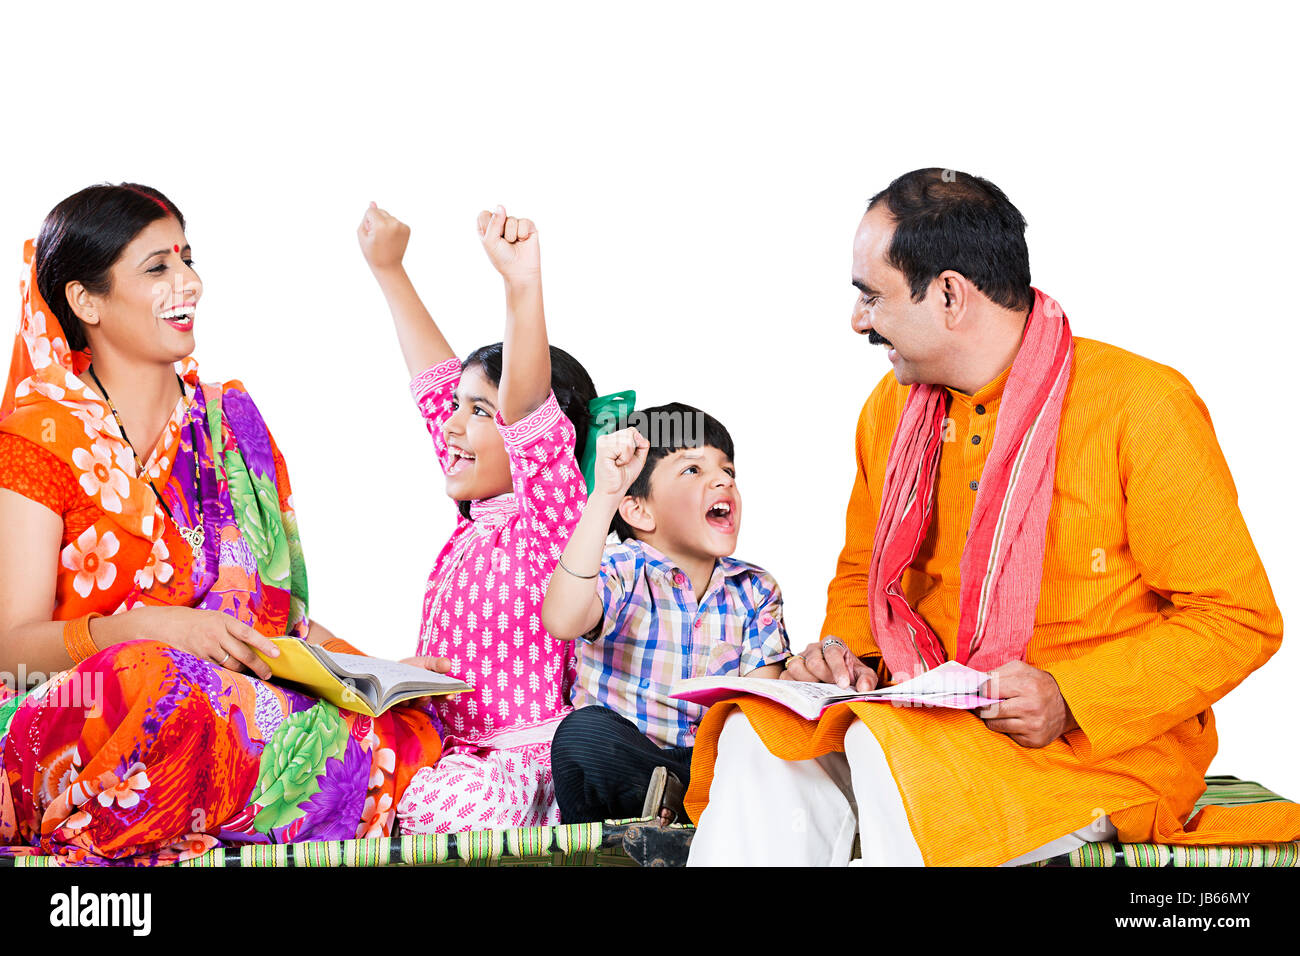 Les agriculteurs ruraux indiens- La famille Parents et enfants 2 l'étude de livres aidant Apprendre Enseigner aux enfants heureux mains soulevées Cheerful Banque D'Images